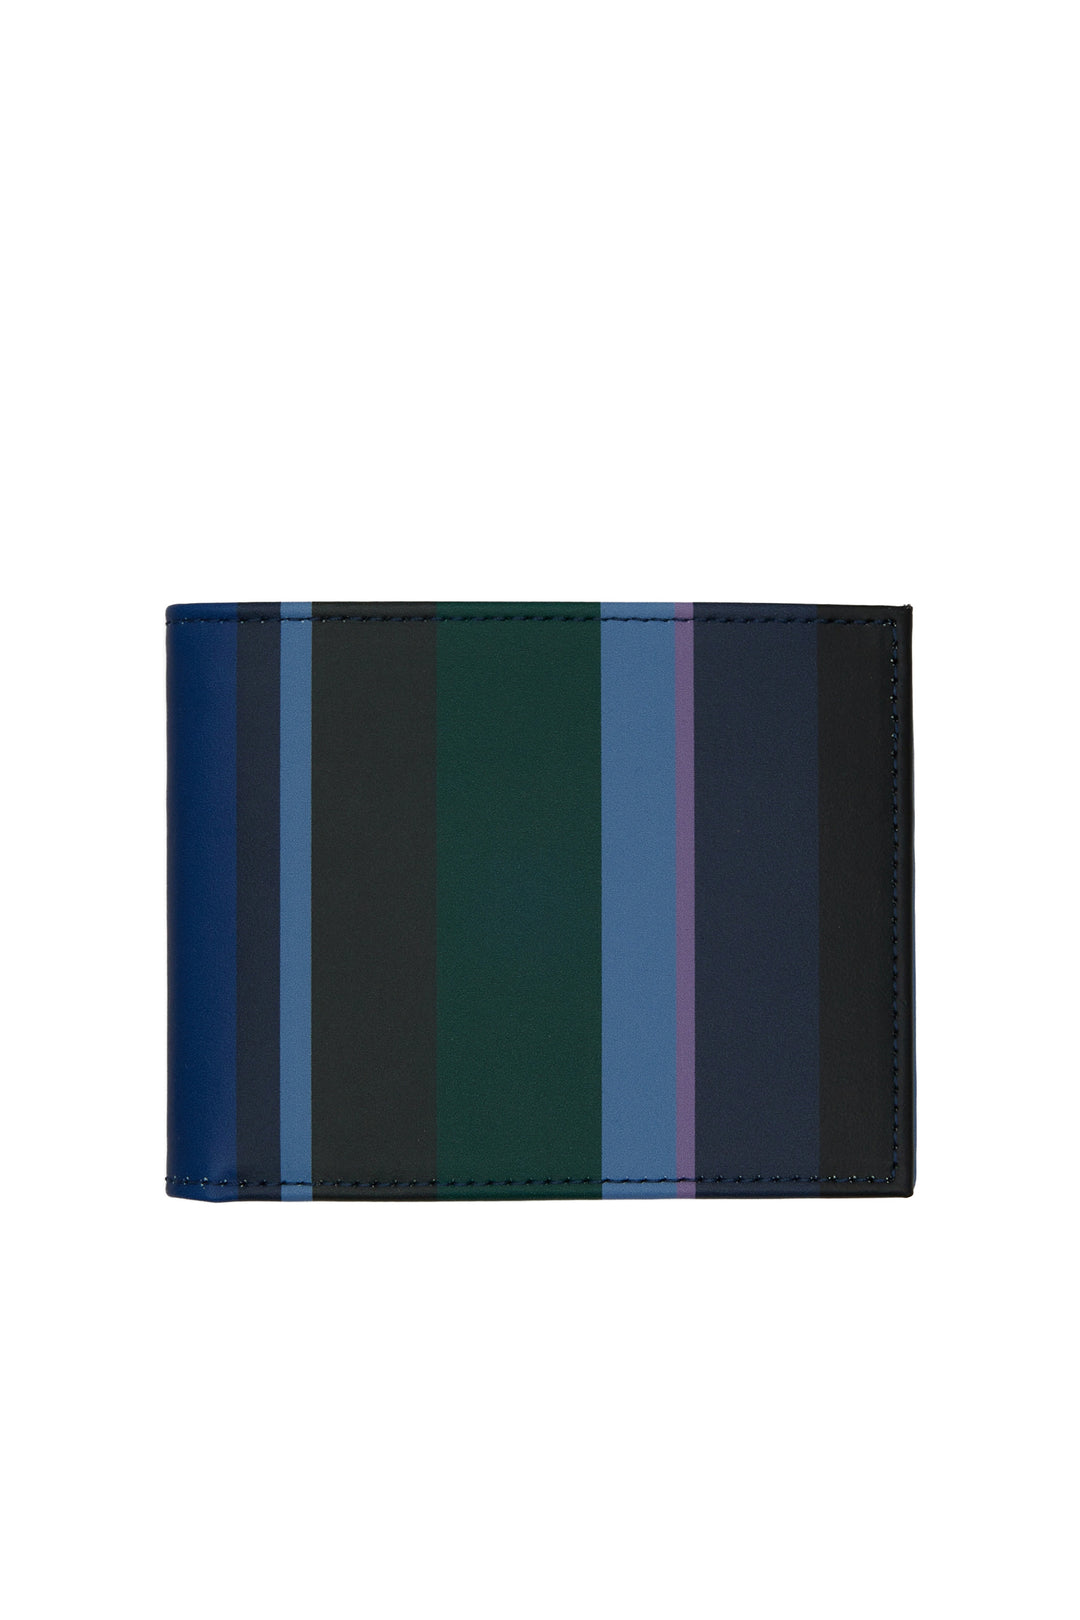 GALLO Portafoglio pelle blu righe multicolor - Mancinelli 1954